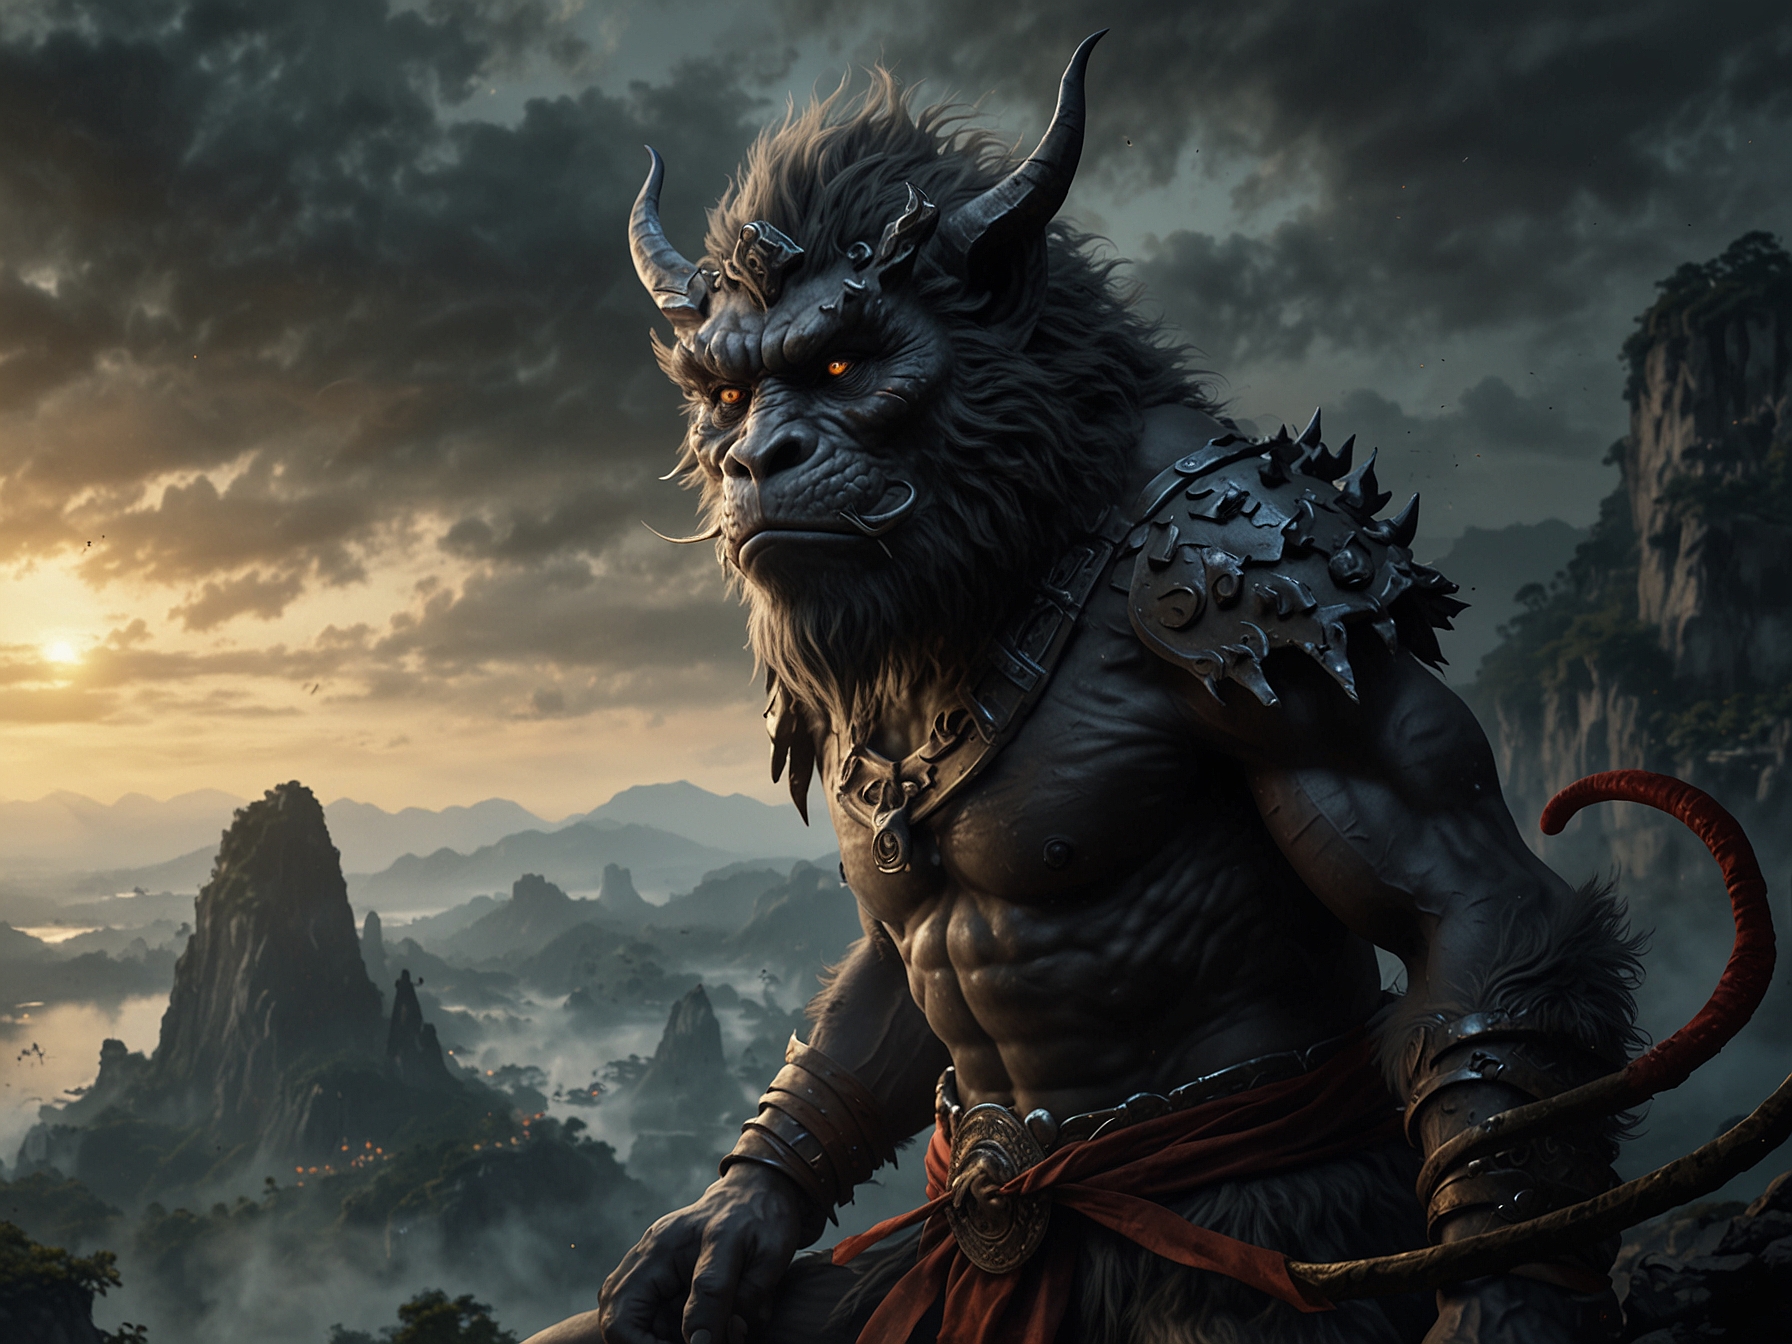 Stunning visuals showcasing the Chinese mythology-inspired landscapes of Black Myth: Wukong.